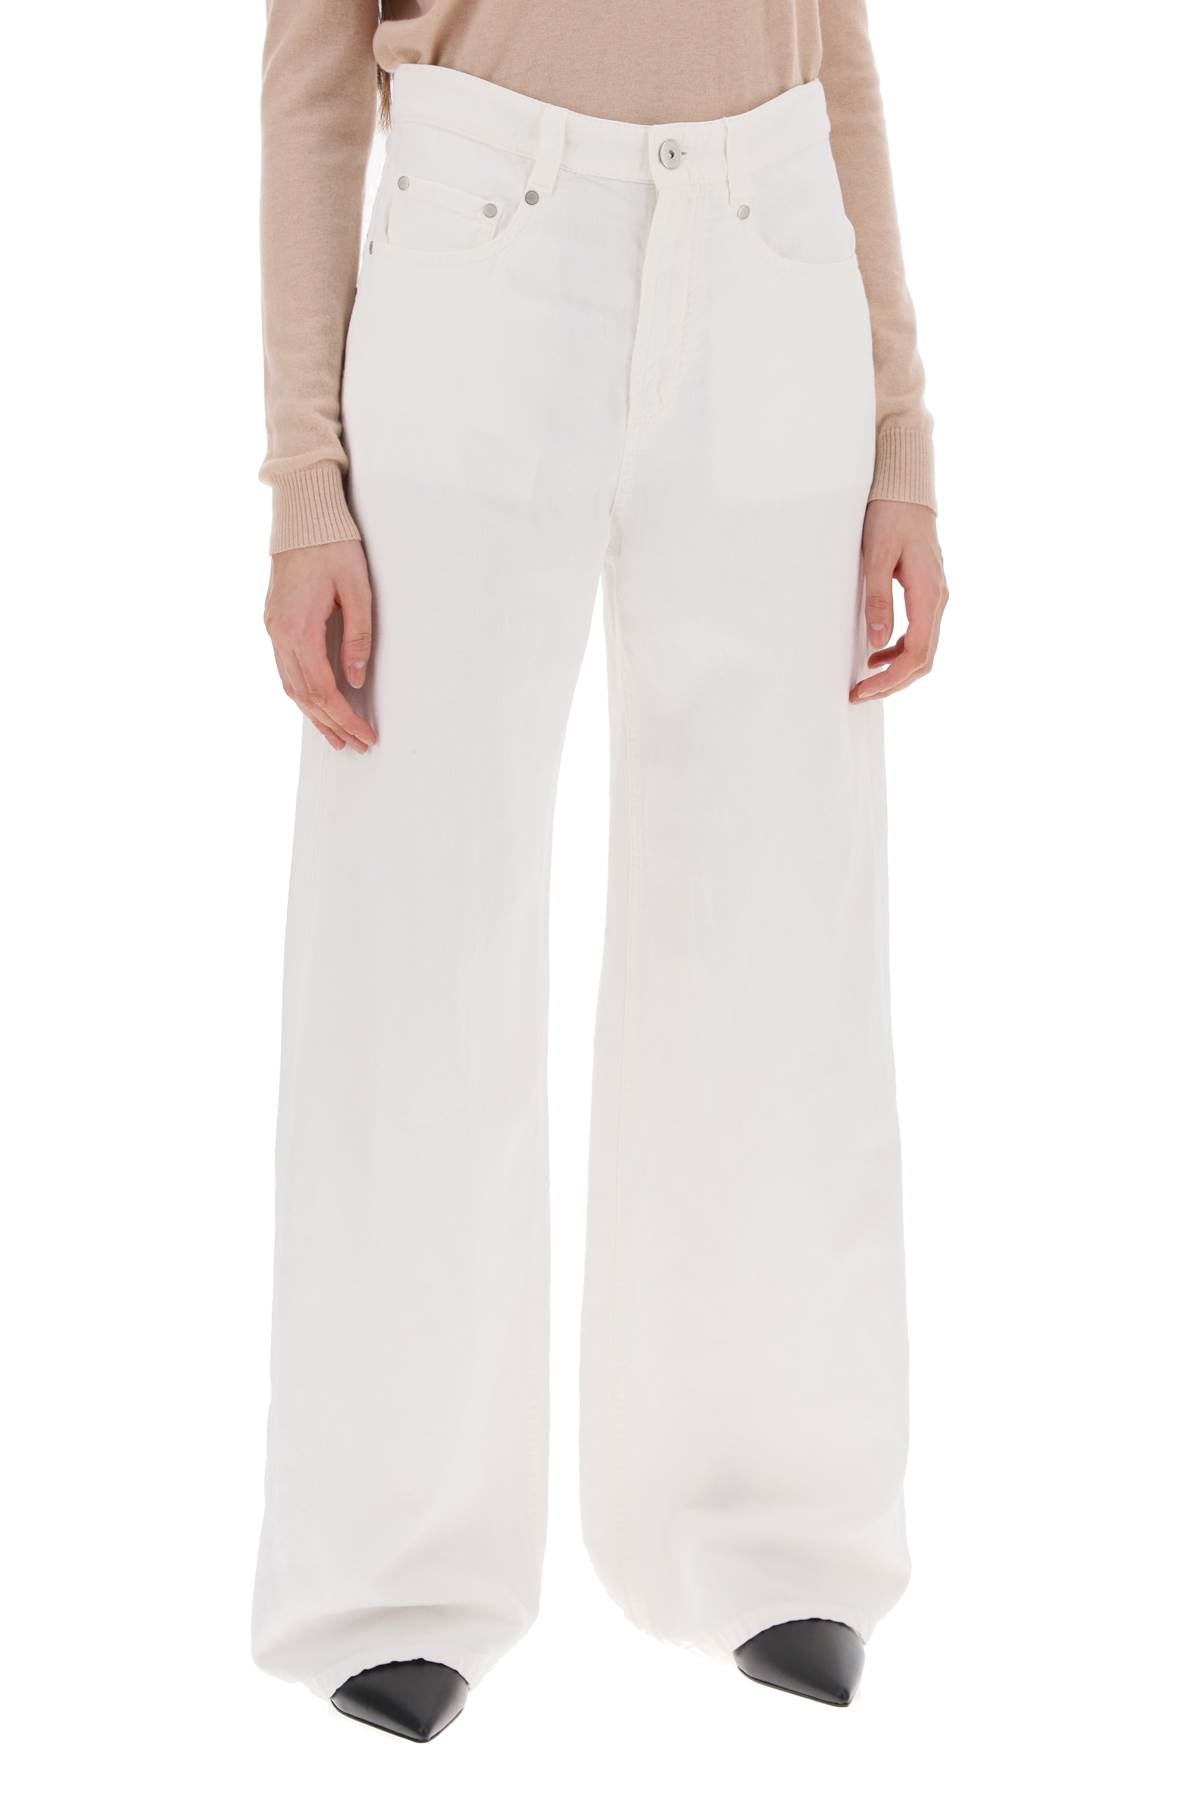 Brunello Cucinelli Cotton And Linen Trousers White